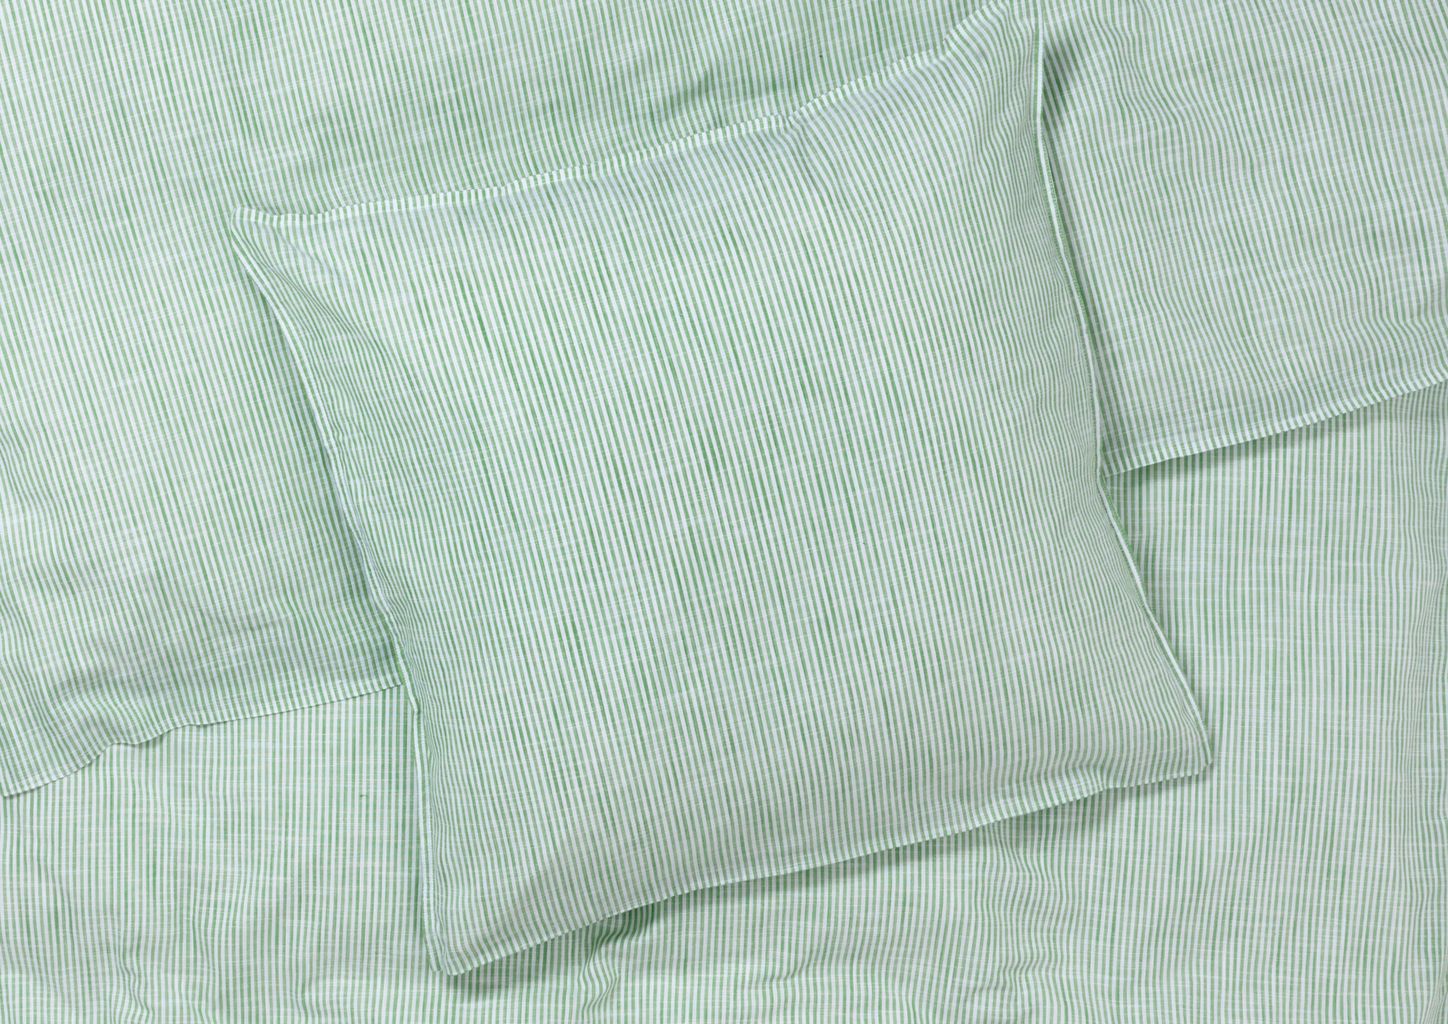 JUNA Monochrome Lines sängkläder 140x200 cm, grönt/vitt